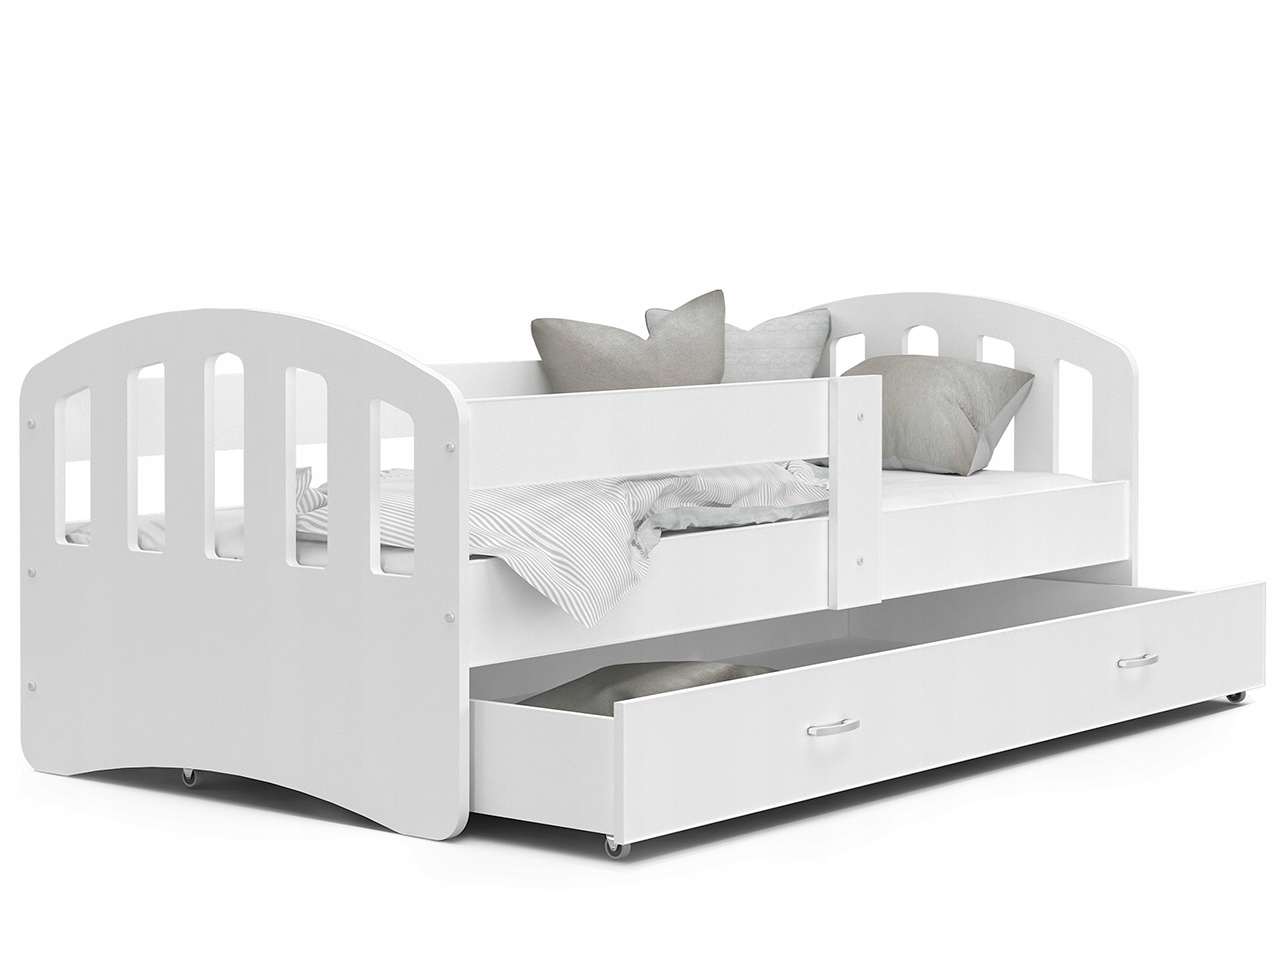 Otroške postelje - Otroška postelja Happy Premium + GRATIS LEŽIŠČE IZ PENE  - 80x200 - ZELENA BARVA / 208